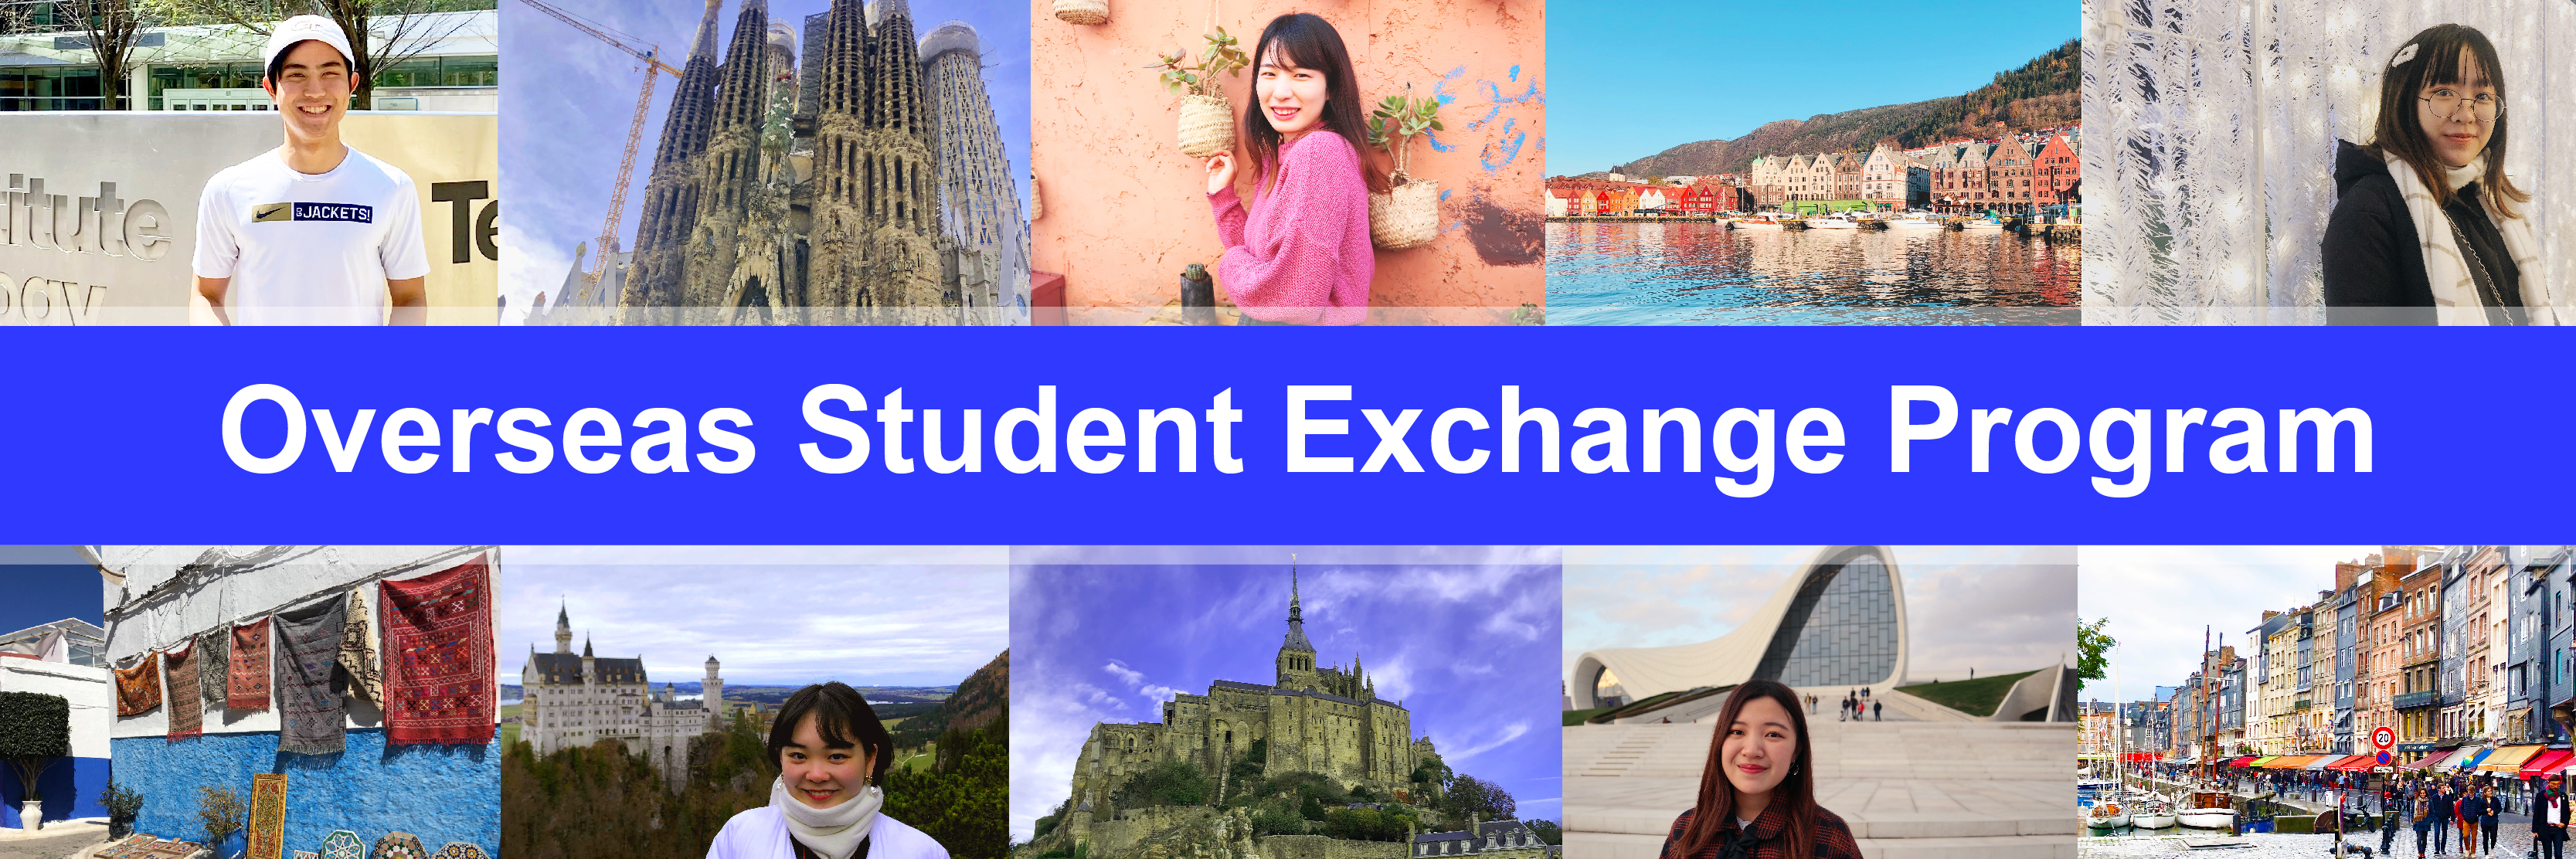 Overview of the Overseas Student Exchange Program